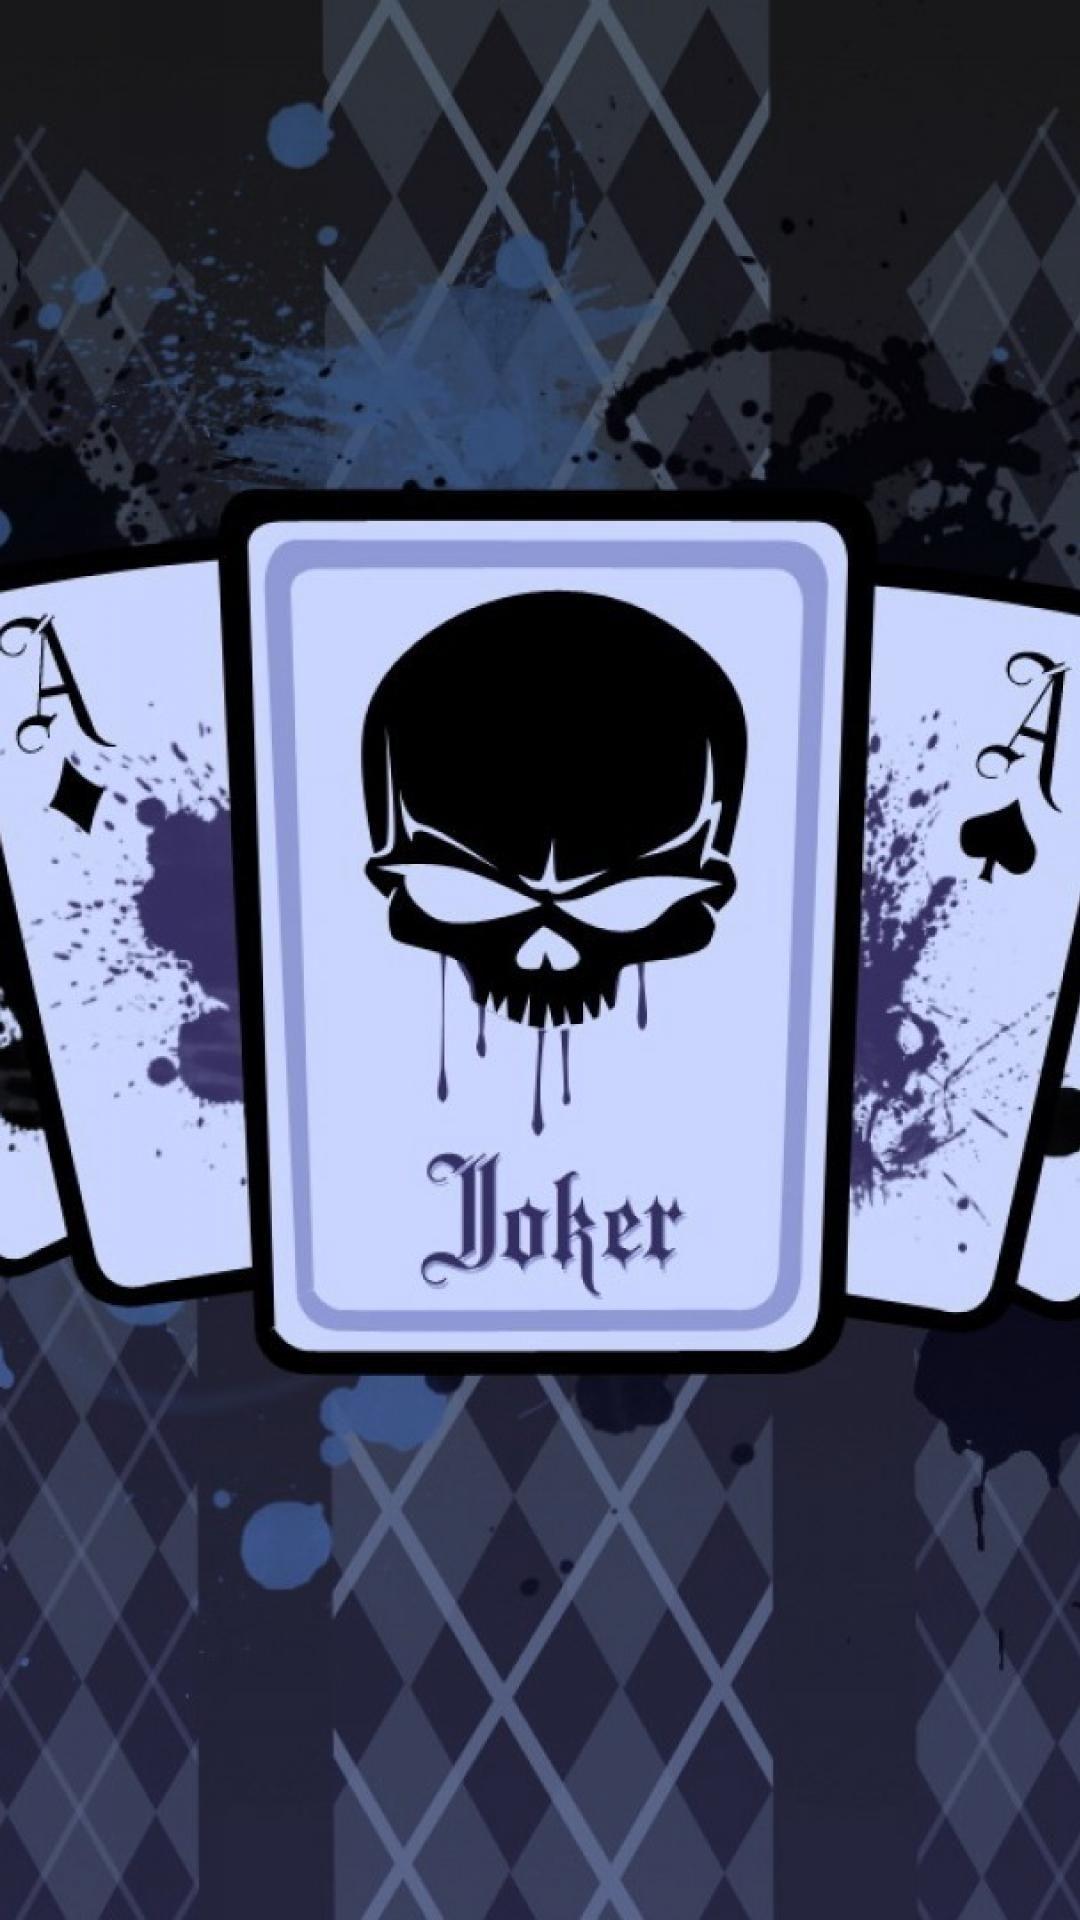  Joker  Card  Wallpapers  Top Free Joker  Card  Backgrounds  